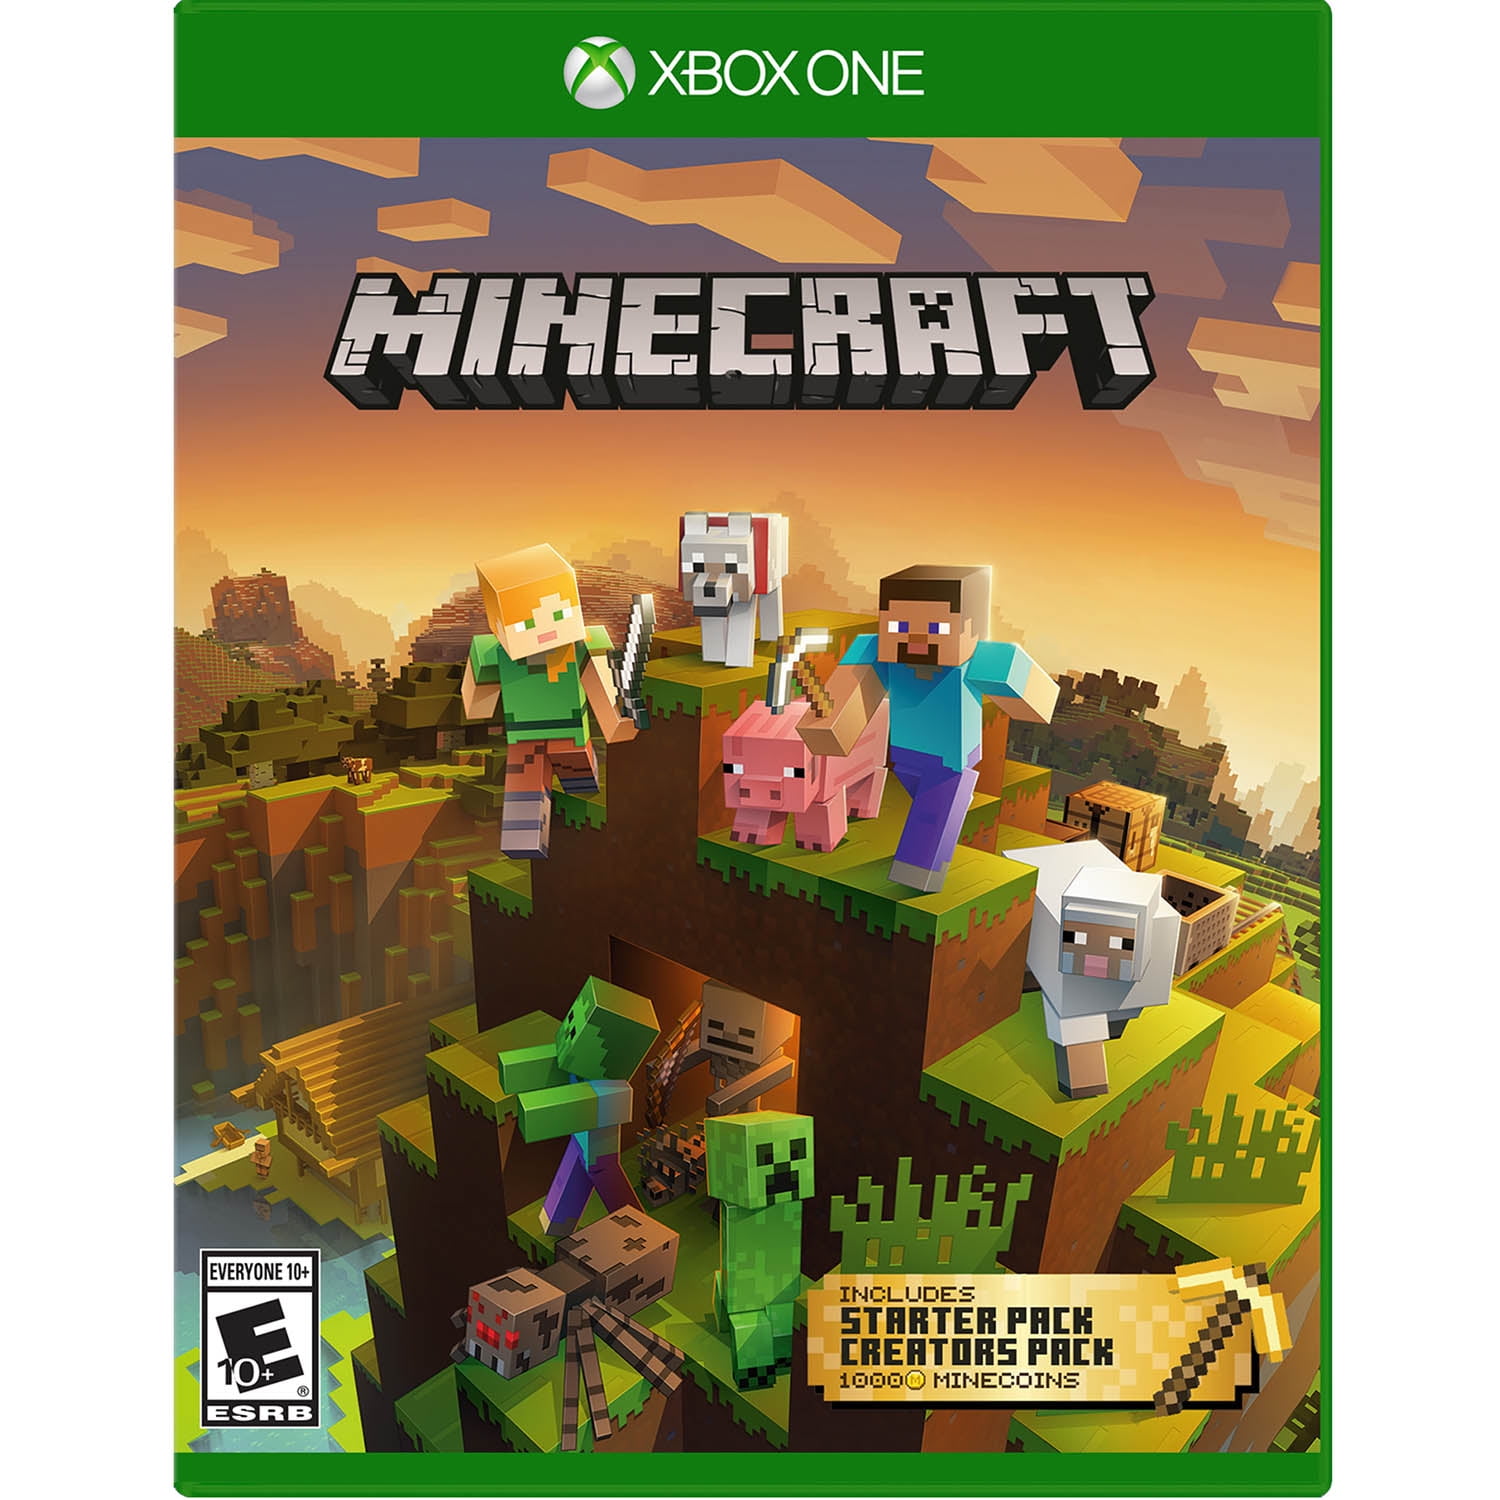 Buy Minecraft Mini Game Heroes Skin Pack (Xbox One) - Xbox Live